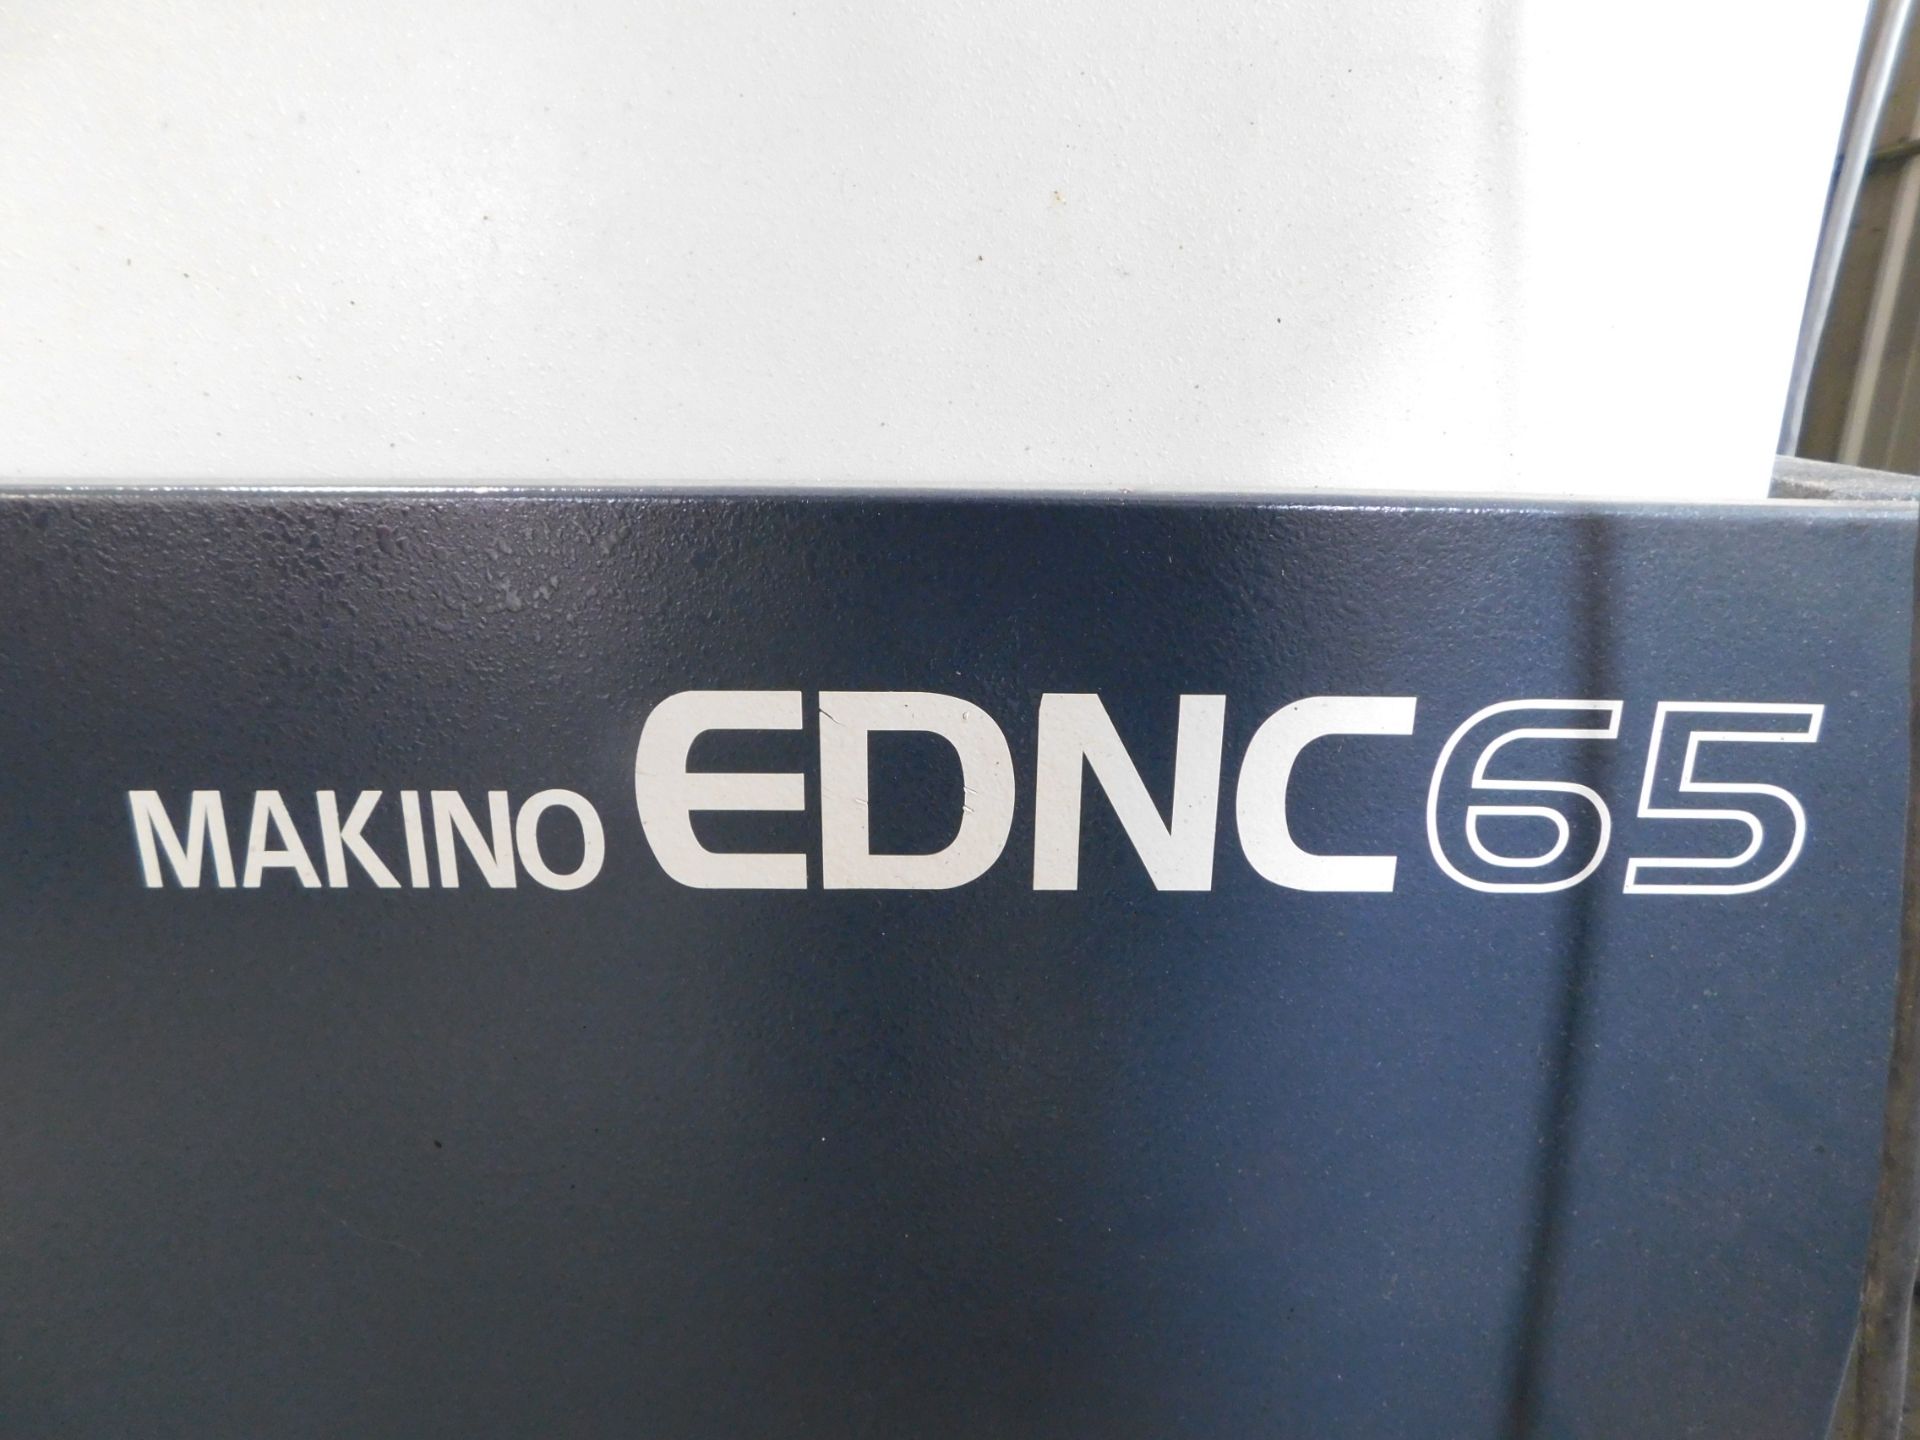 Makino Model EDNC65 Sinker EDM sn#E2891, New in 2006, System 3R Tool Head, 16 Position - Image 10 of 16